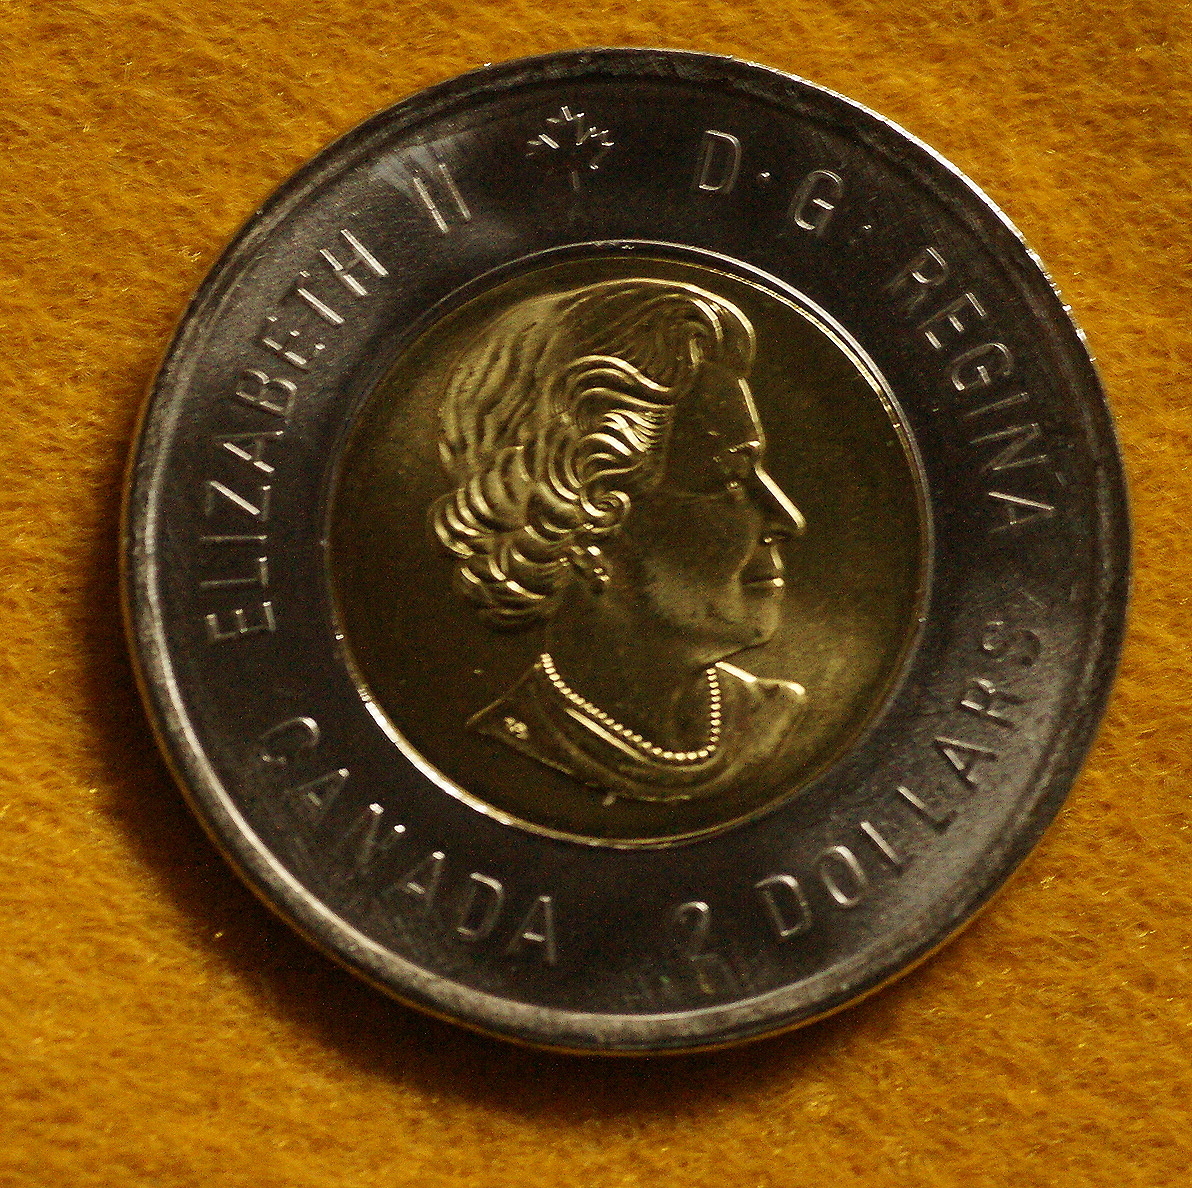 ★無塗装版1種1枚★カナダ先住民芸術家★ビル・リード生誕100周年記念2ドル硬貨コイン2020年 _画像3